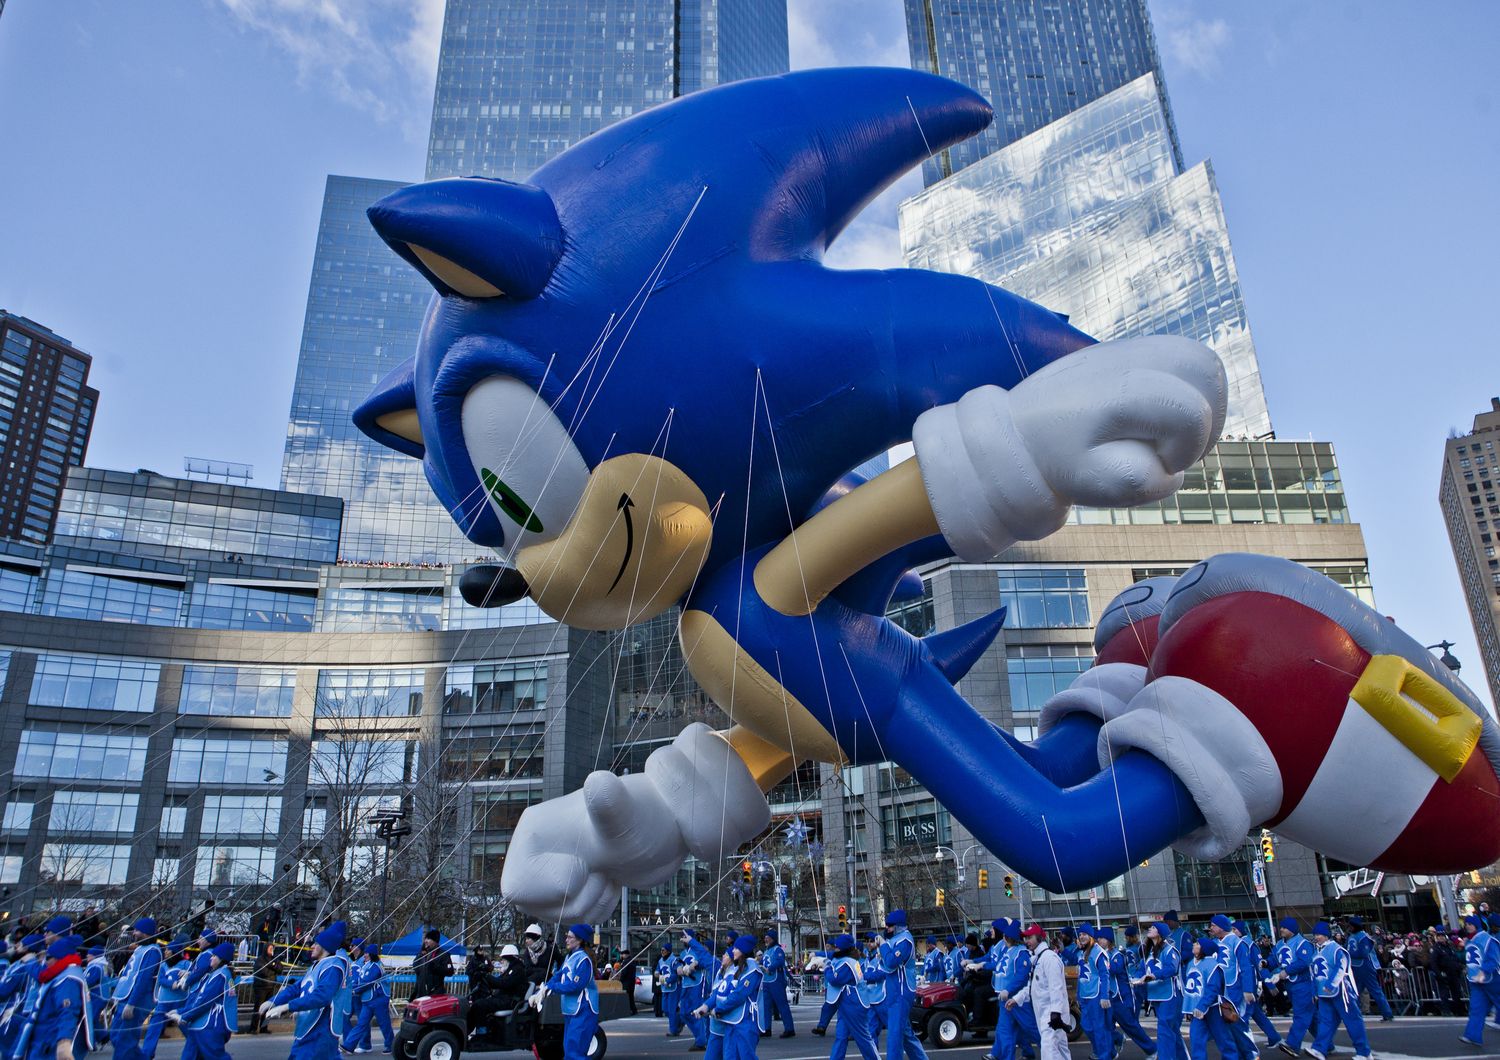 pallone gonfiabile per personaggio Sonic the Hedgehog alla 87esima parata del Giorno del ringraziamento negli Usa (wikipedia)&nbsp;